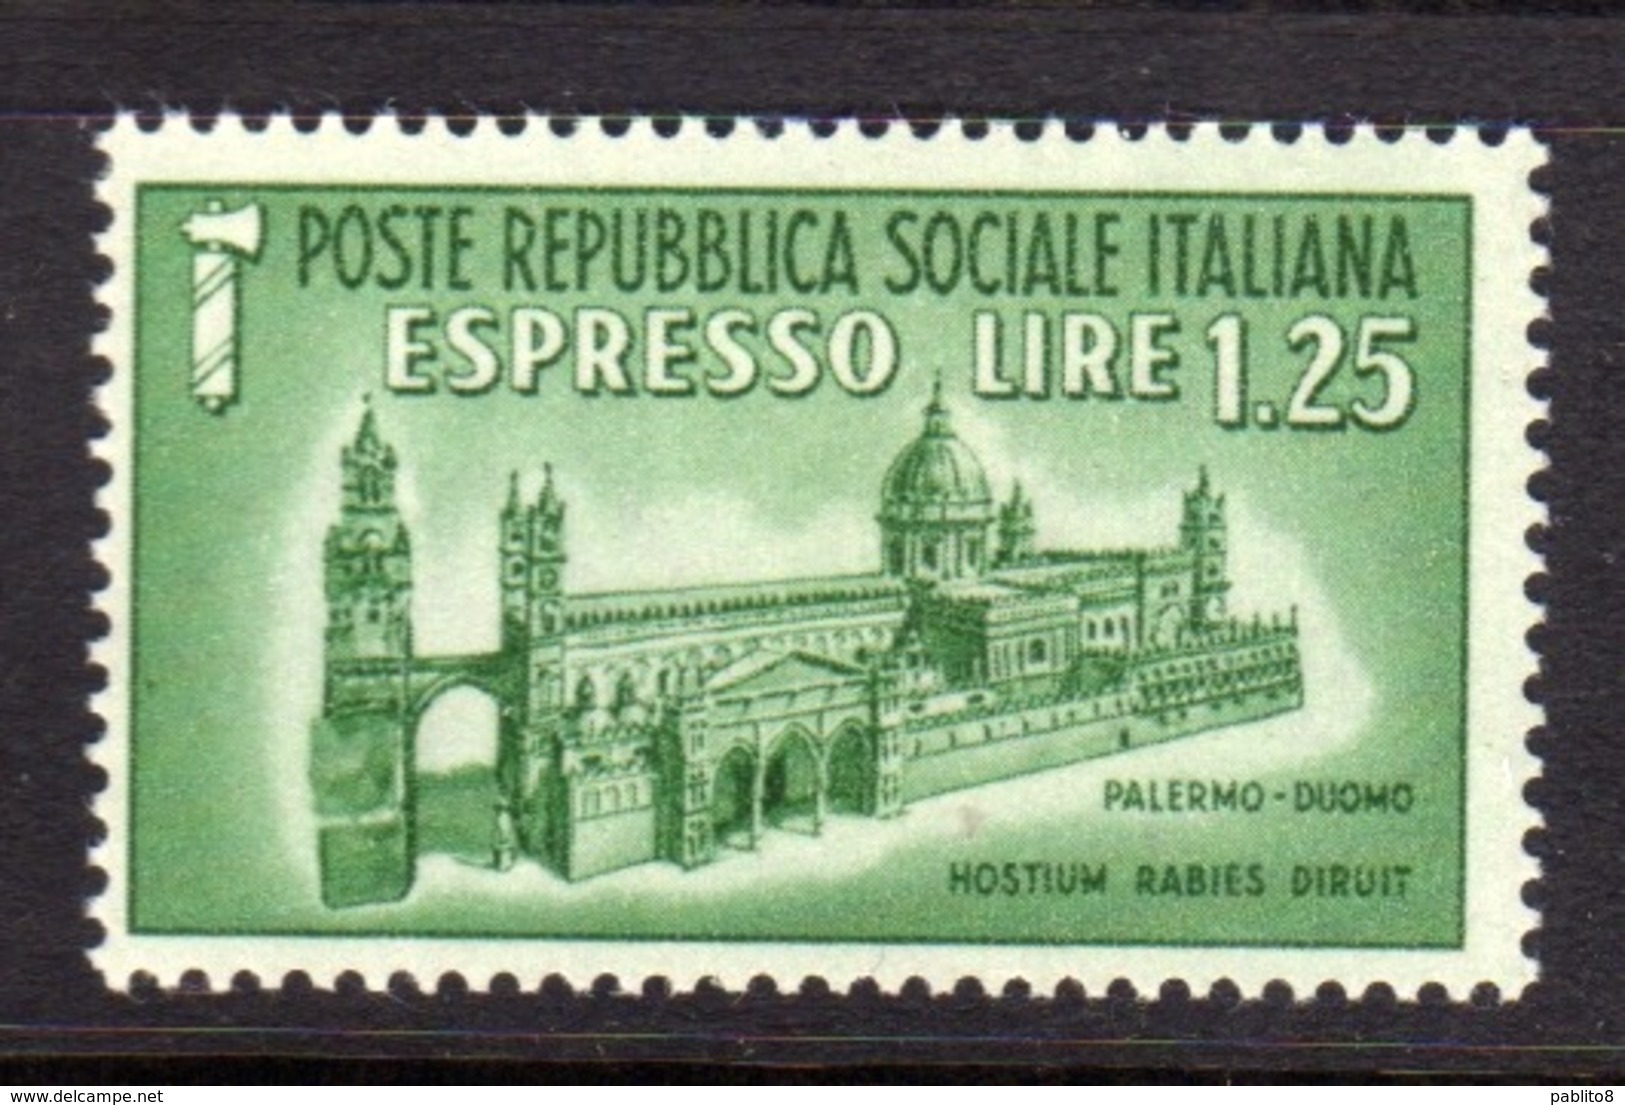 ITALIA REGNO ITALY KINGDOM REPUBBLICA SOCIALE RSI 1944 ESPRESSO SPECIAL DELIVERY RSI DUOMO DI PALERMO LIRE 1,25 MNH - Poste Exprèsse